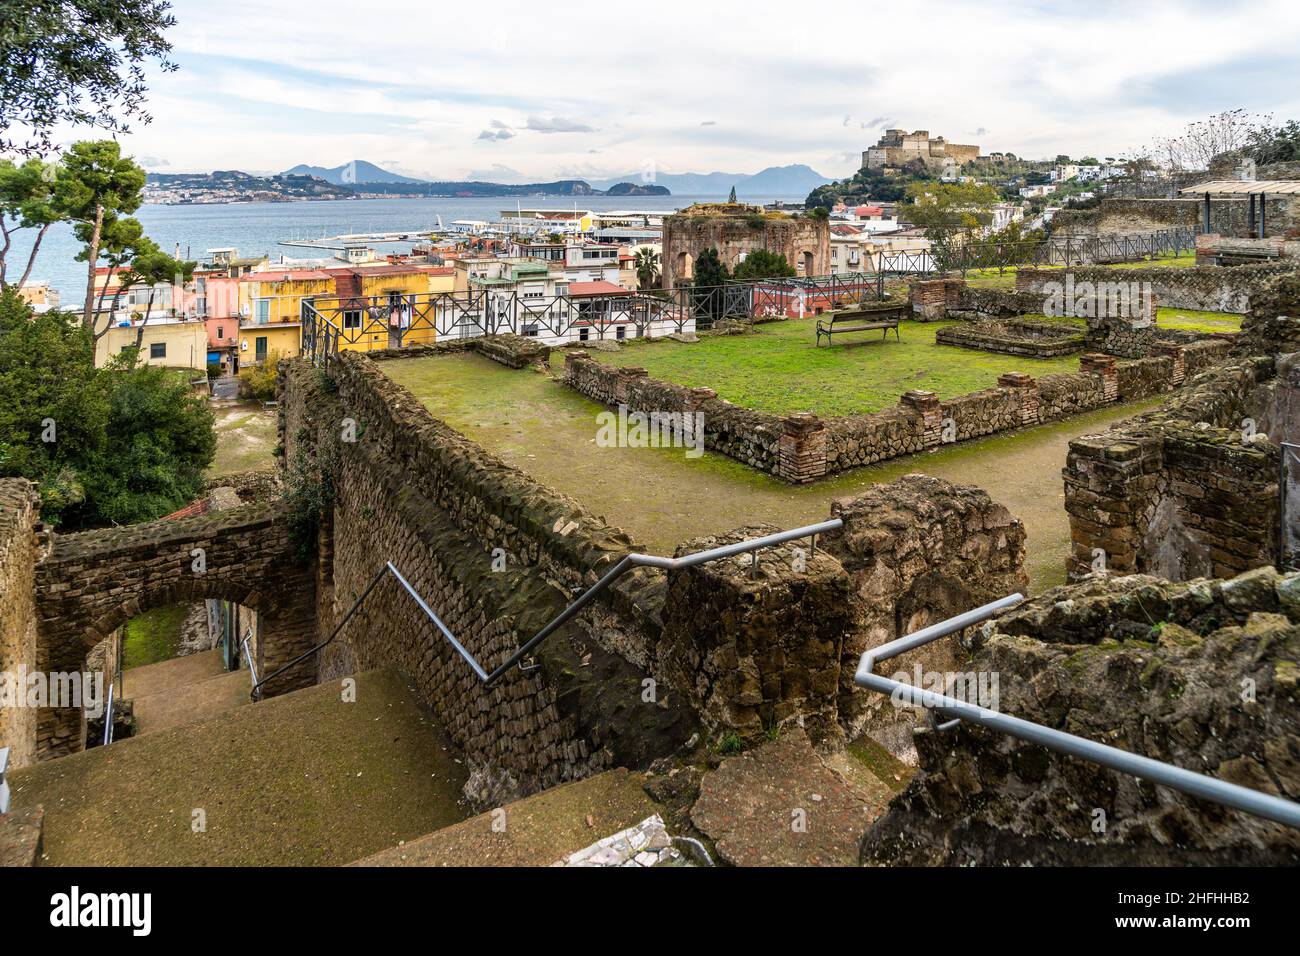 Veduta del parco archeologico di Baiae situato sul suggestivo Golfo di Napoli, regione Campania, Italia Foto Stock